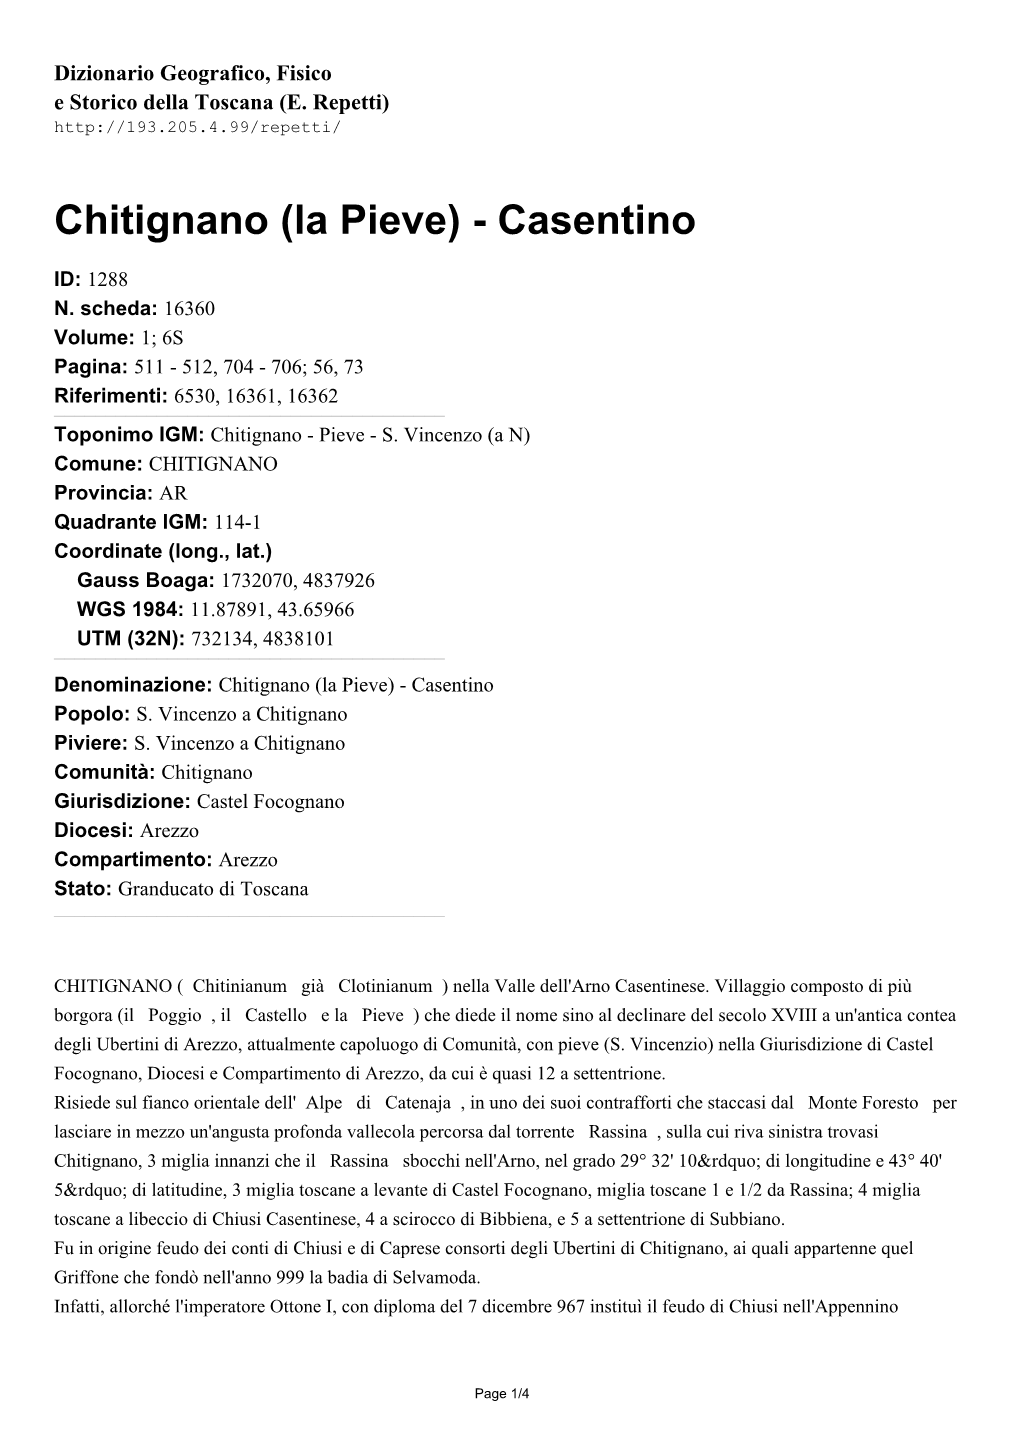 Chitignano (La Pieve) - Casentino